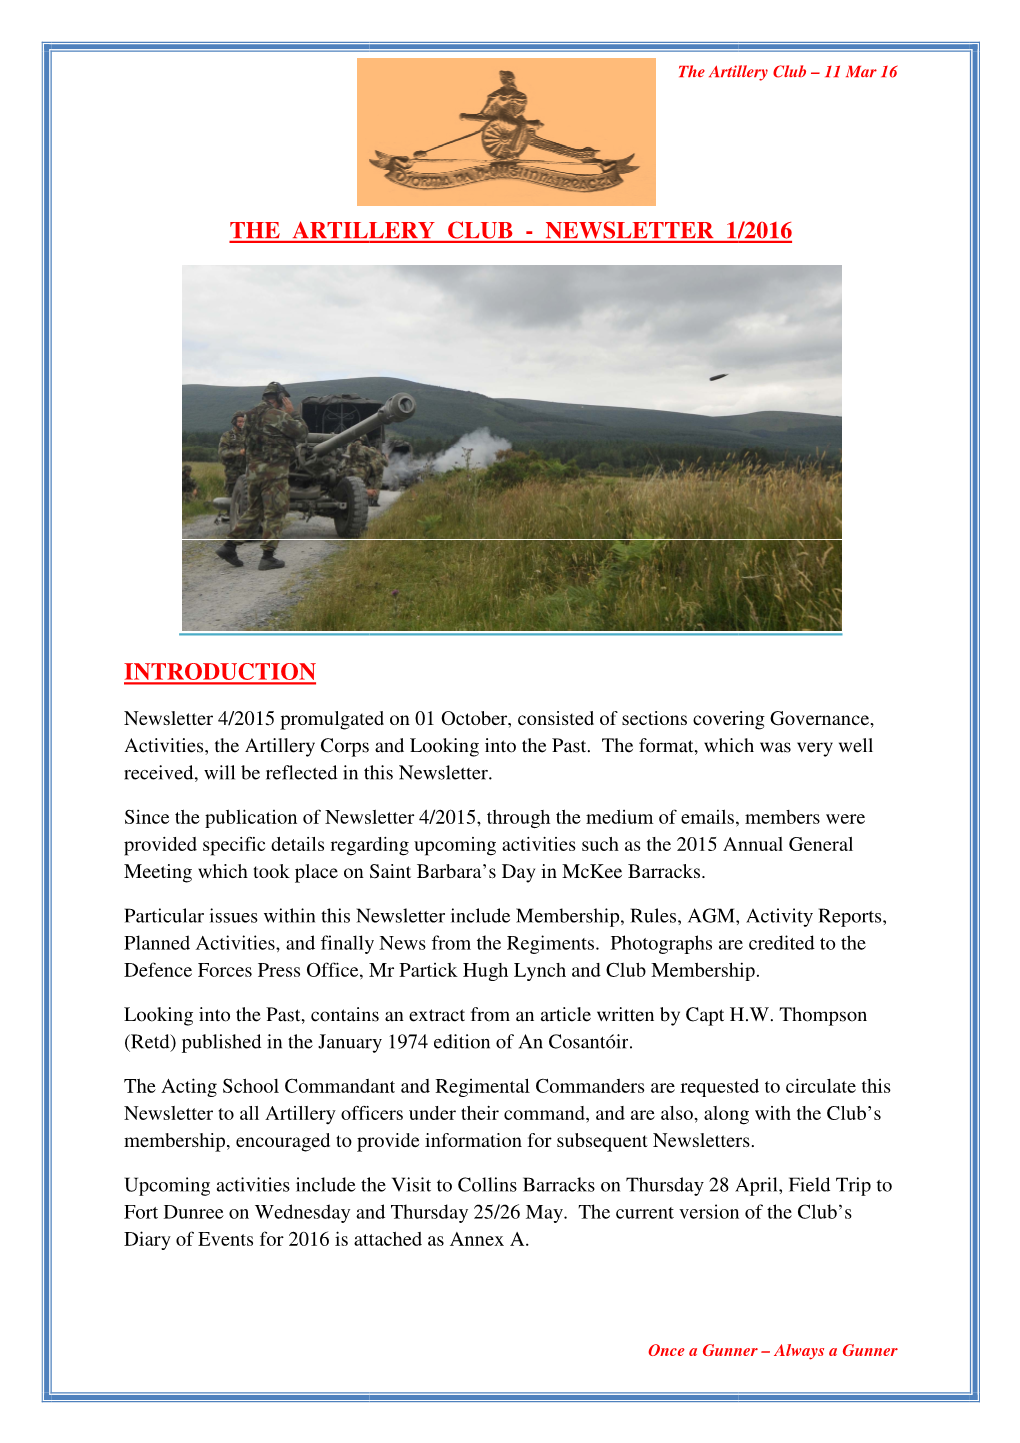 Artillery Club Newsletter 1 of 2016